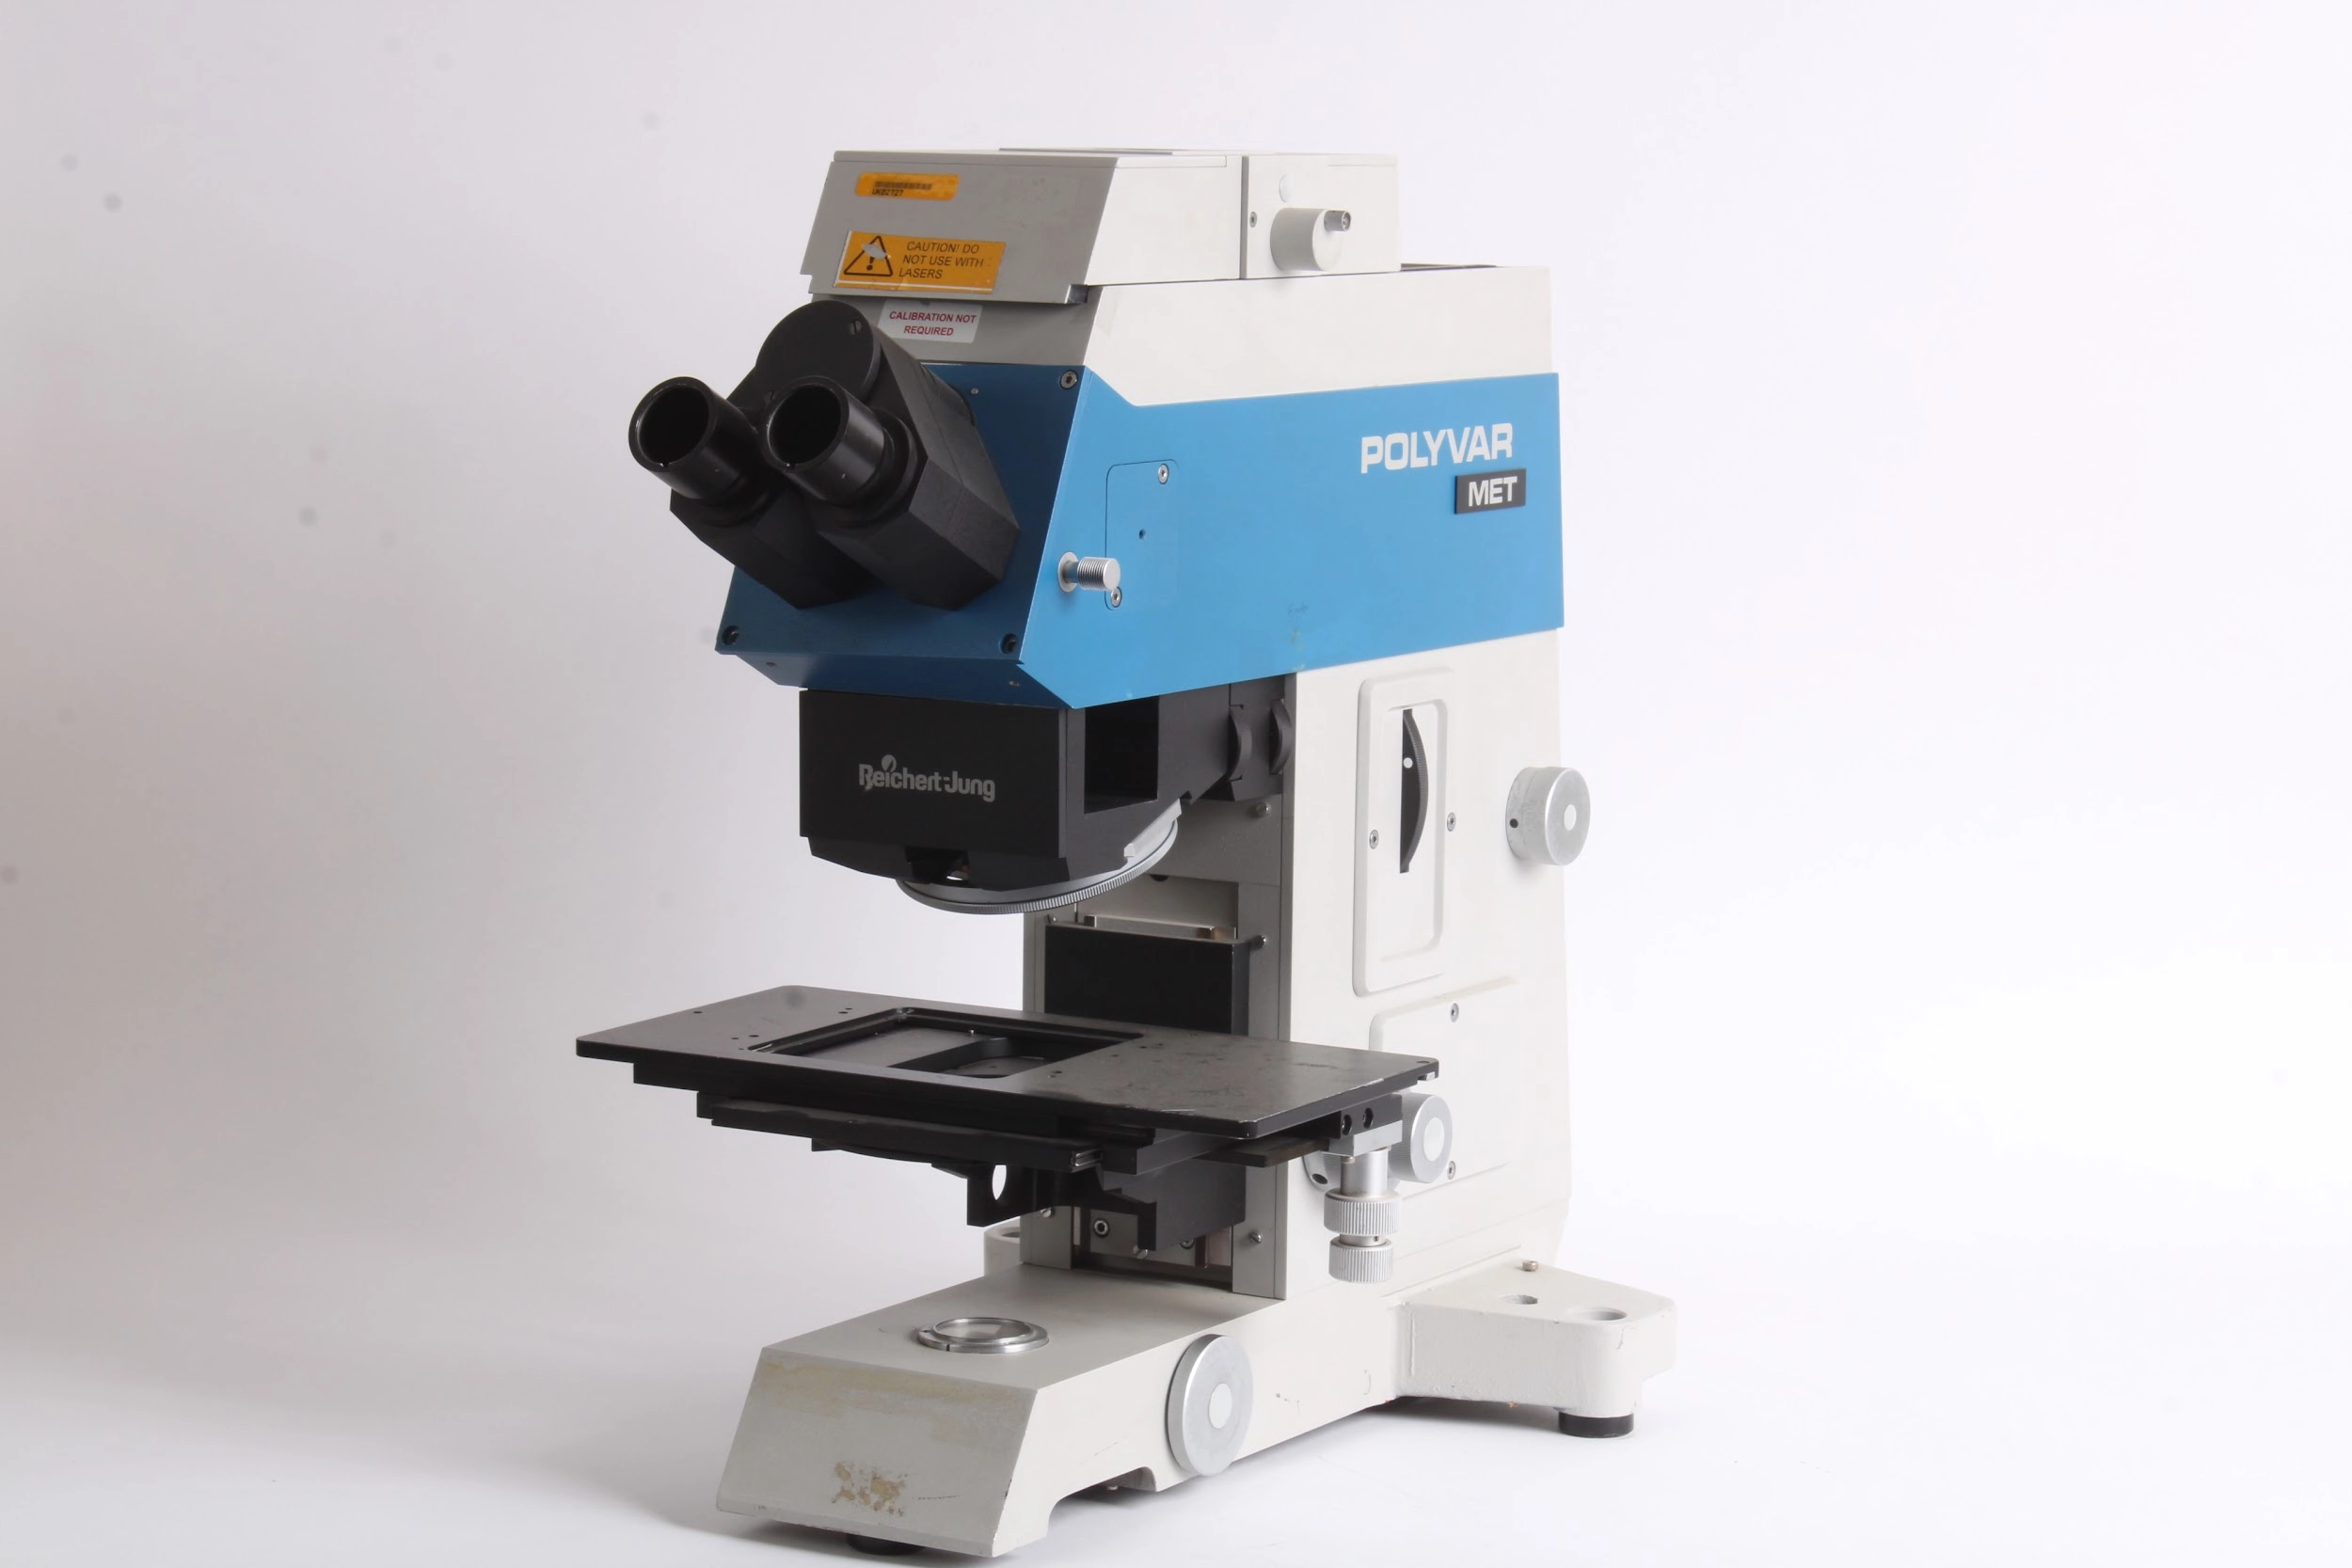 Reichert Jung Polyvar Met Microscope 300602 - AS IS